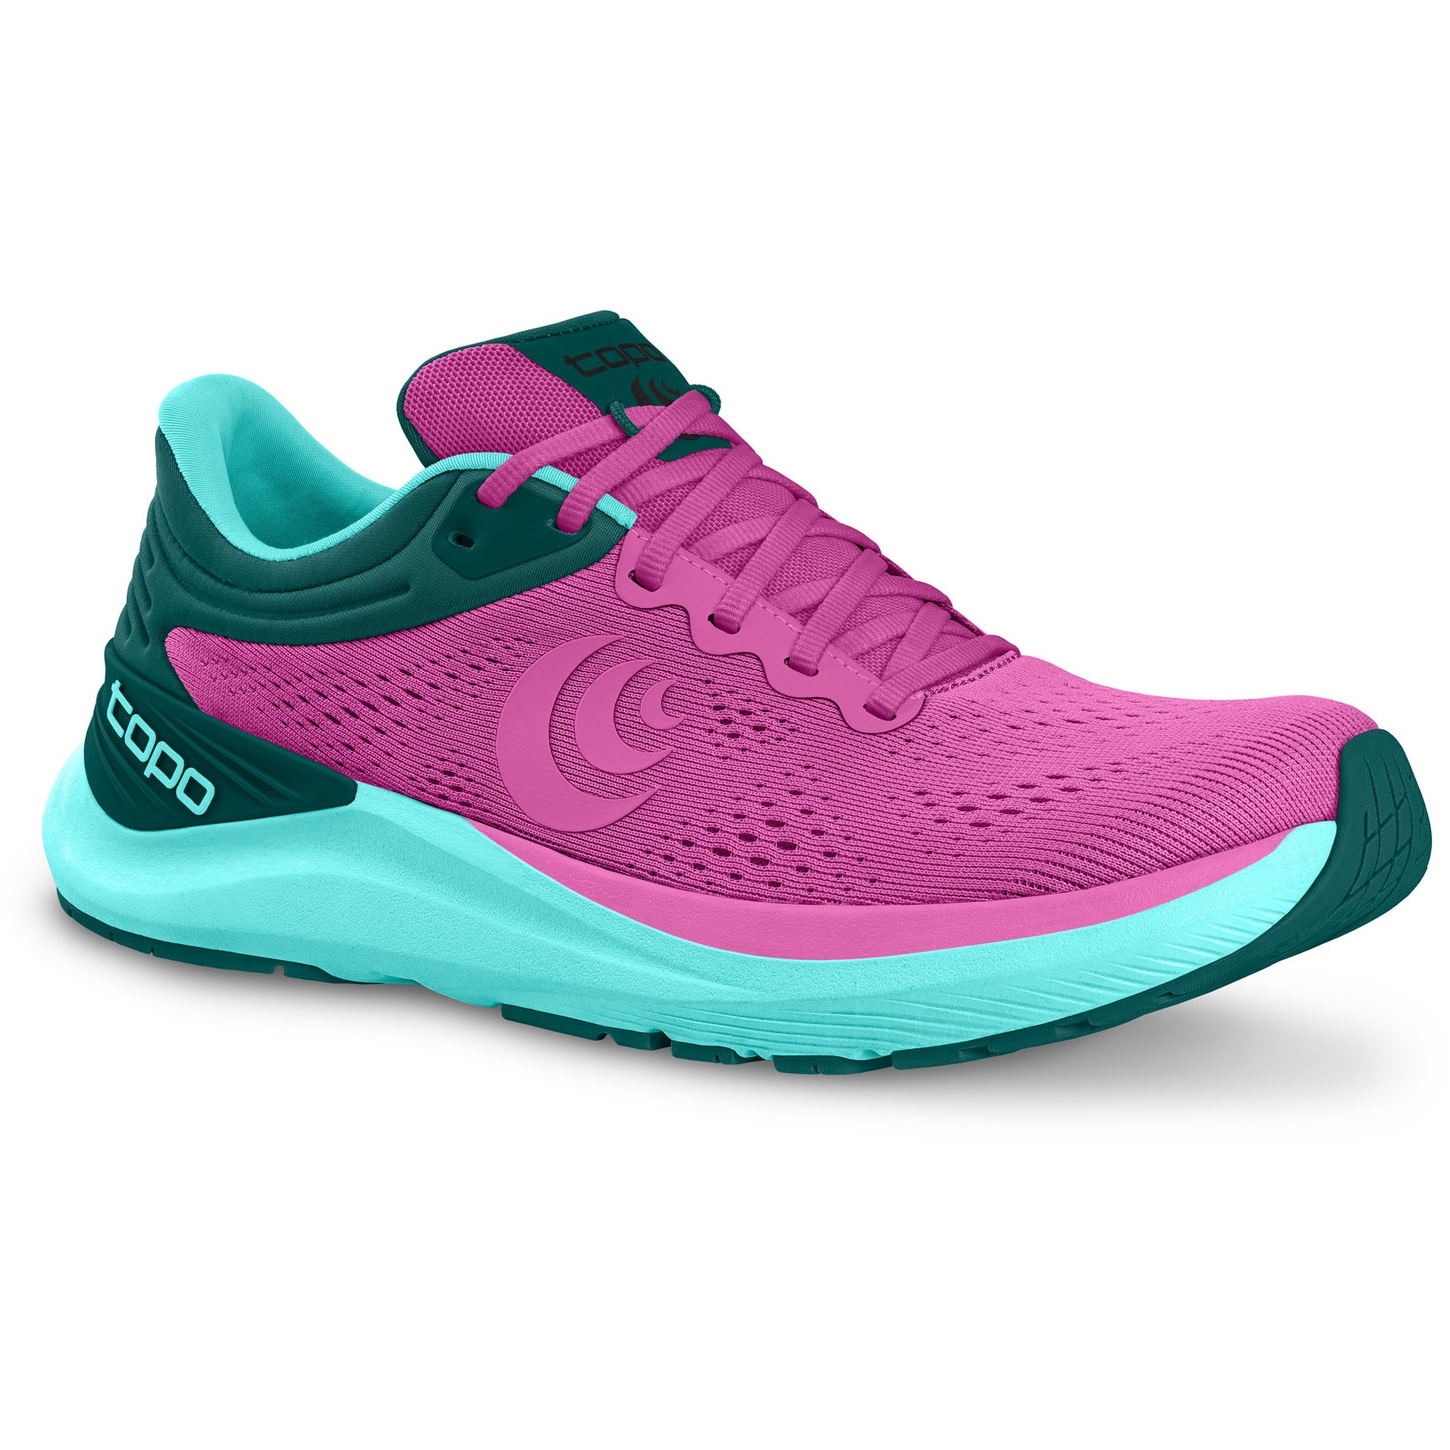 Productfoto van Topo Athletic Ultrafly 4 Hardloopschoenen Dames - violet/blue